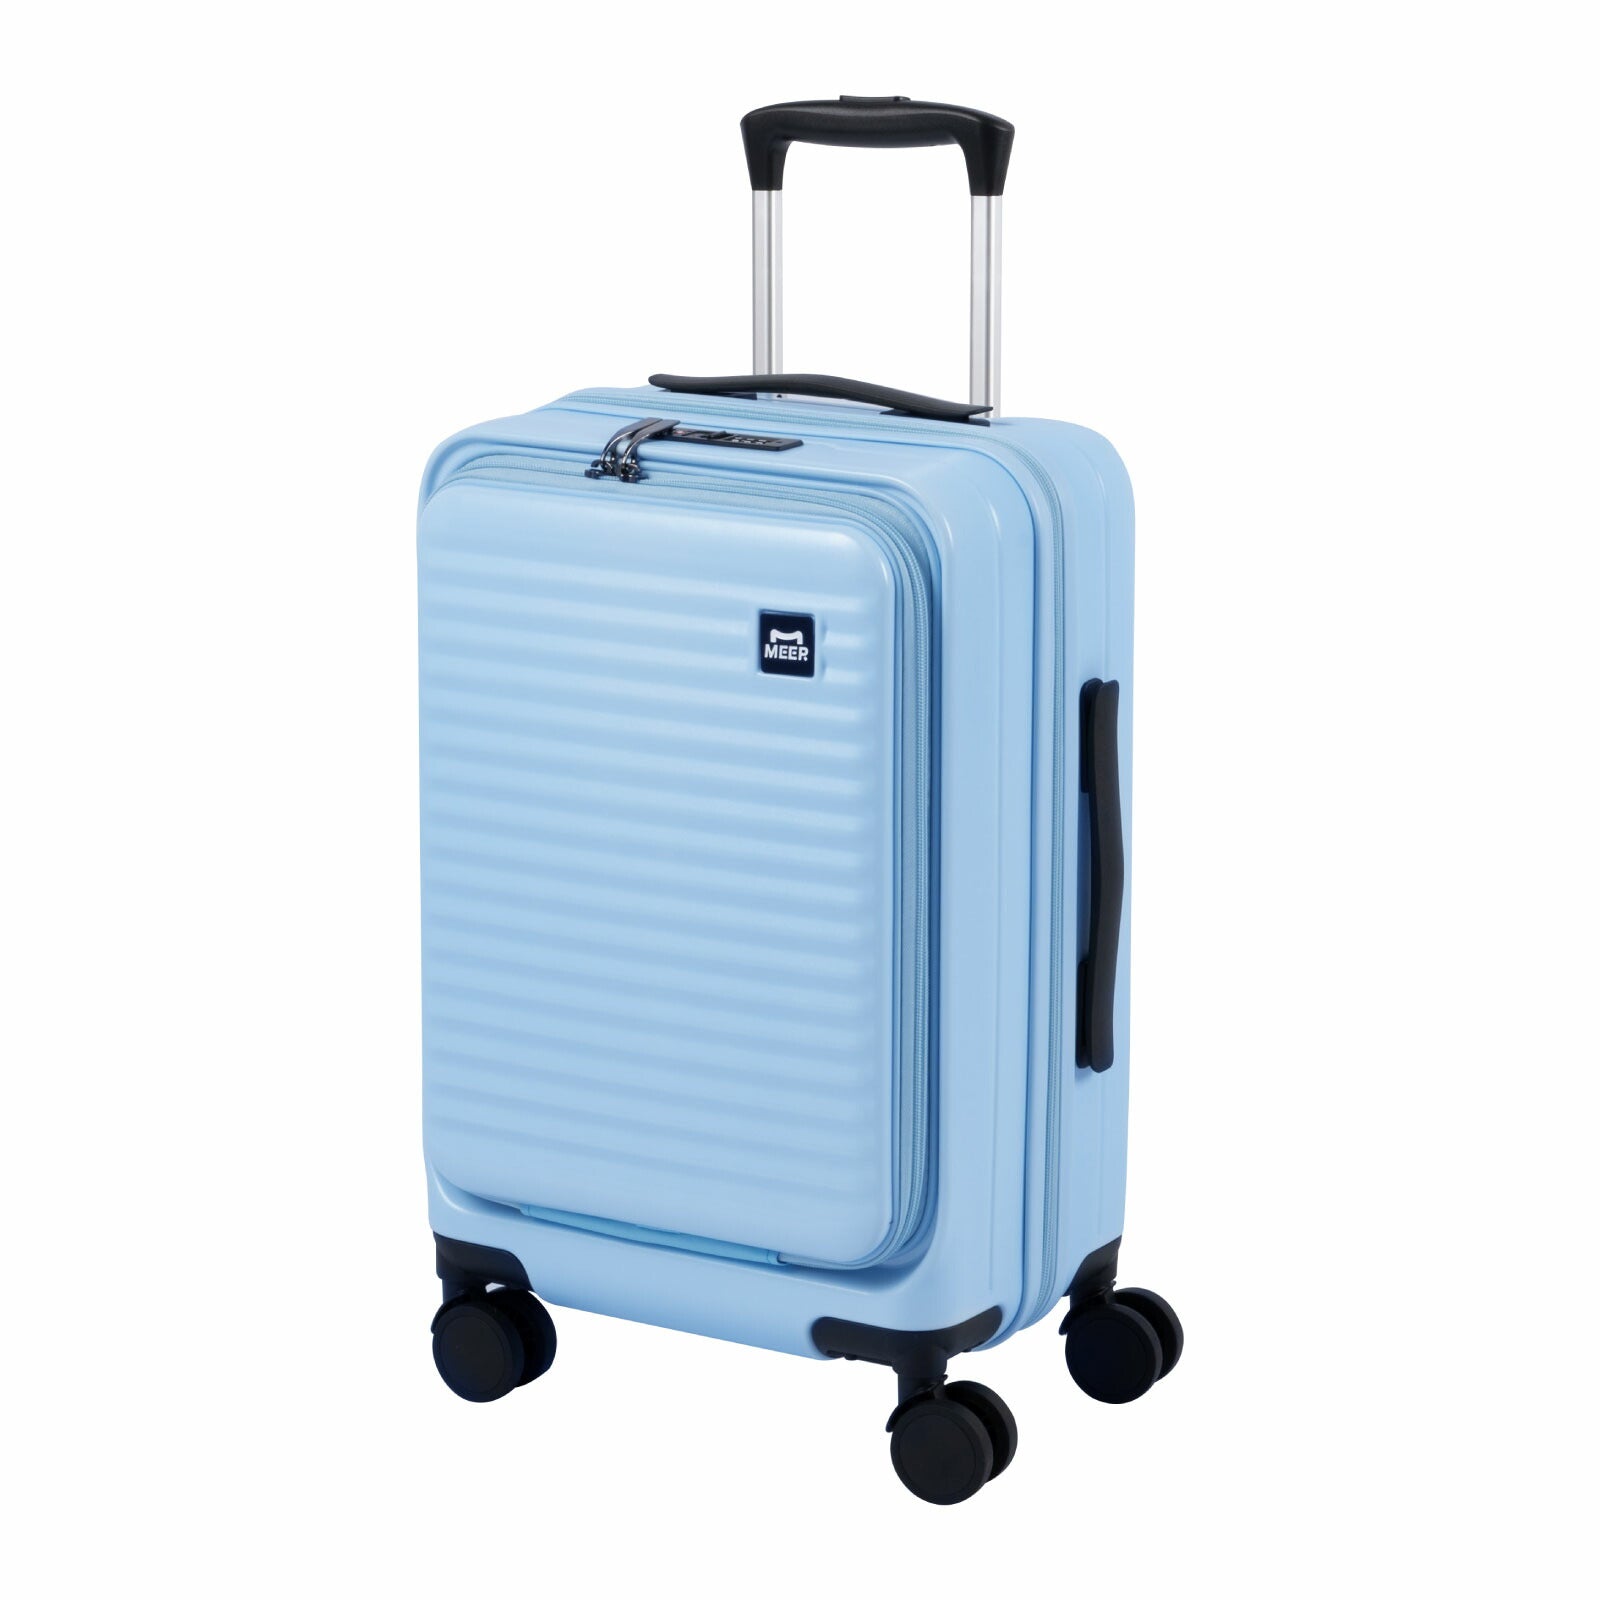 前開き スーツケース キャリーケース Sサイズ 40L キャリーバッグ 4カラー選ぶ 1-3日用 泊まる 軽量設計 360度回転 大容量 ファスナー式 ビジネス 修学旅行 海外旅行 国内旅行 小型 出張 sc118-20